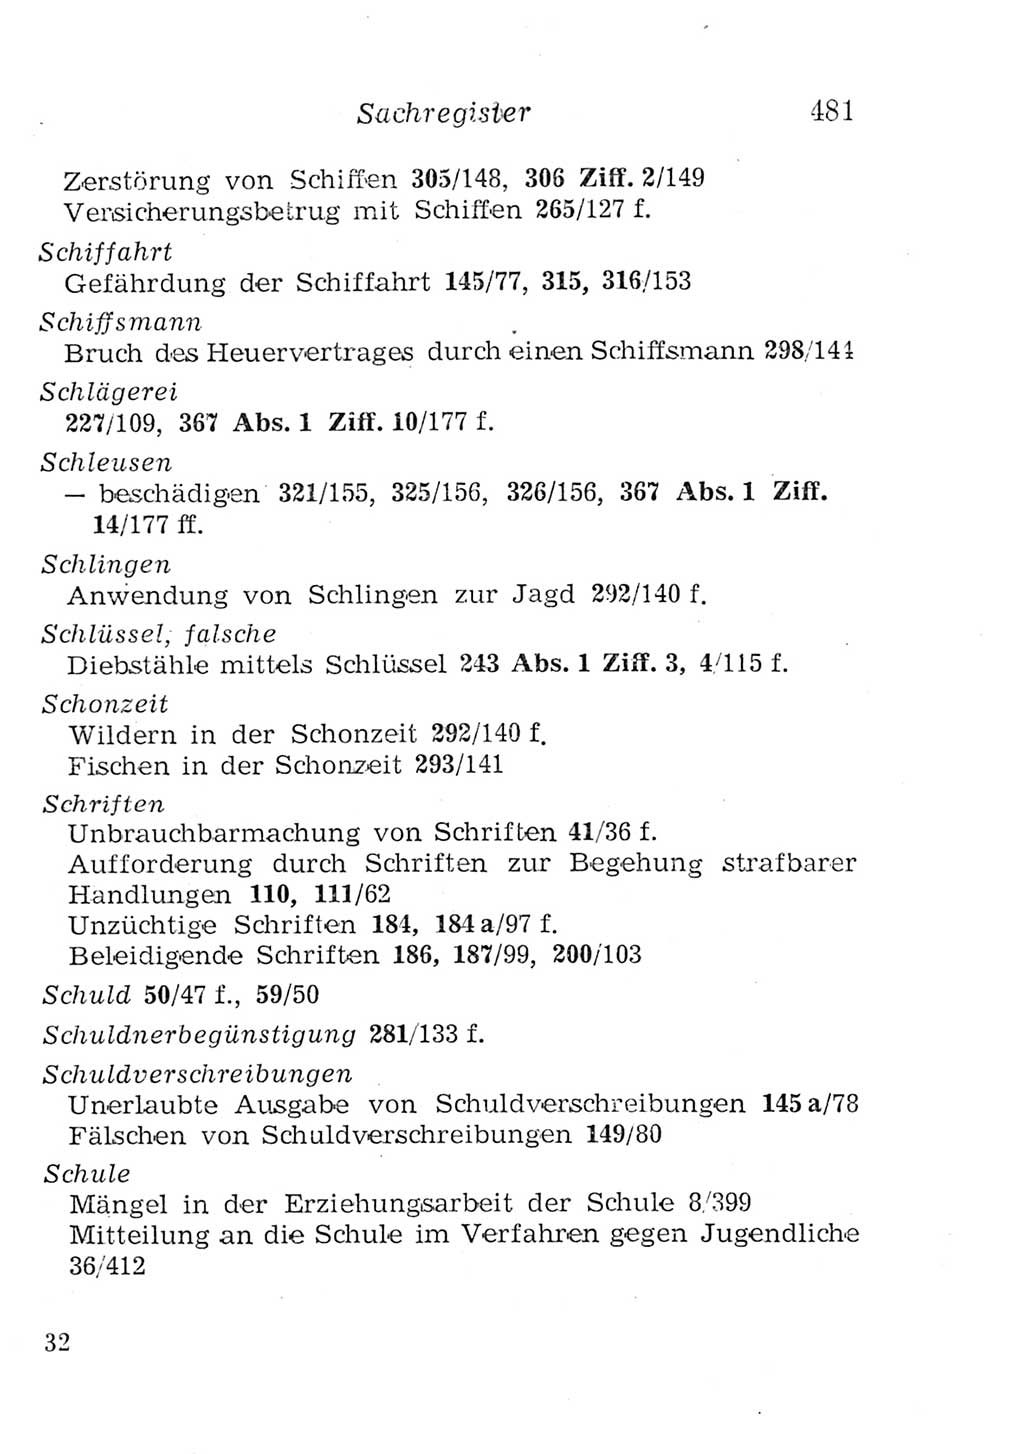 Strafgesetzbuch (StGB) und andere Strafgesetze [Deutsche Demokratische Republik (DDR)] 1957, Seite 481 (StGB Strafges. DDR 1957, S. 481)